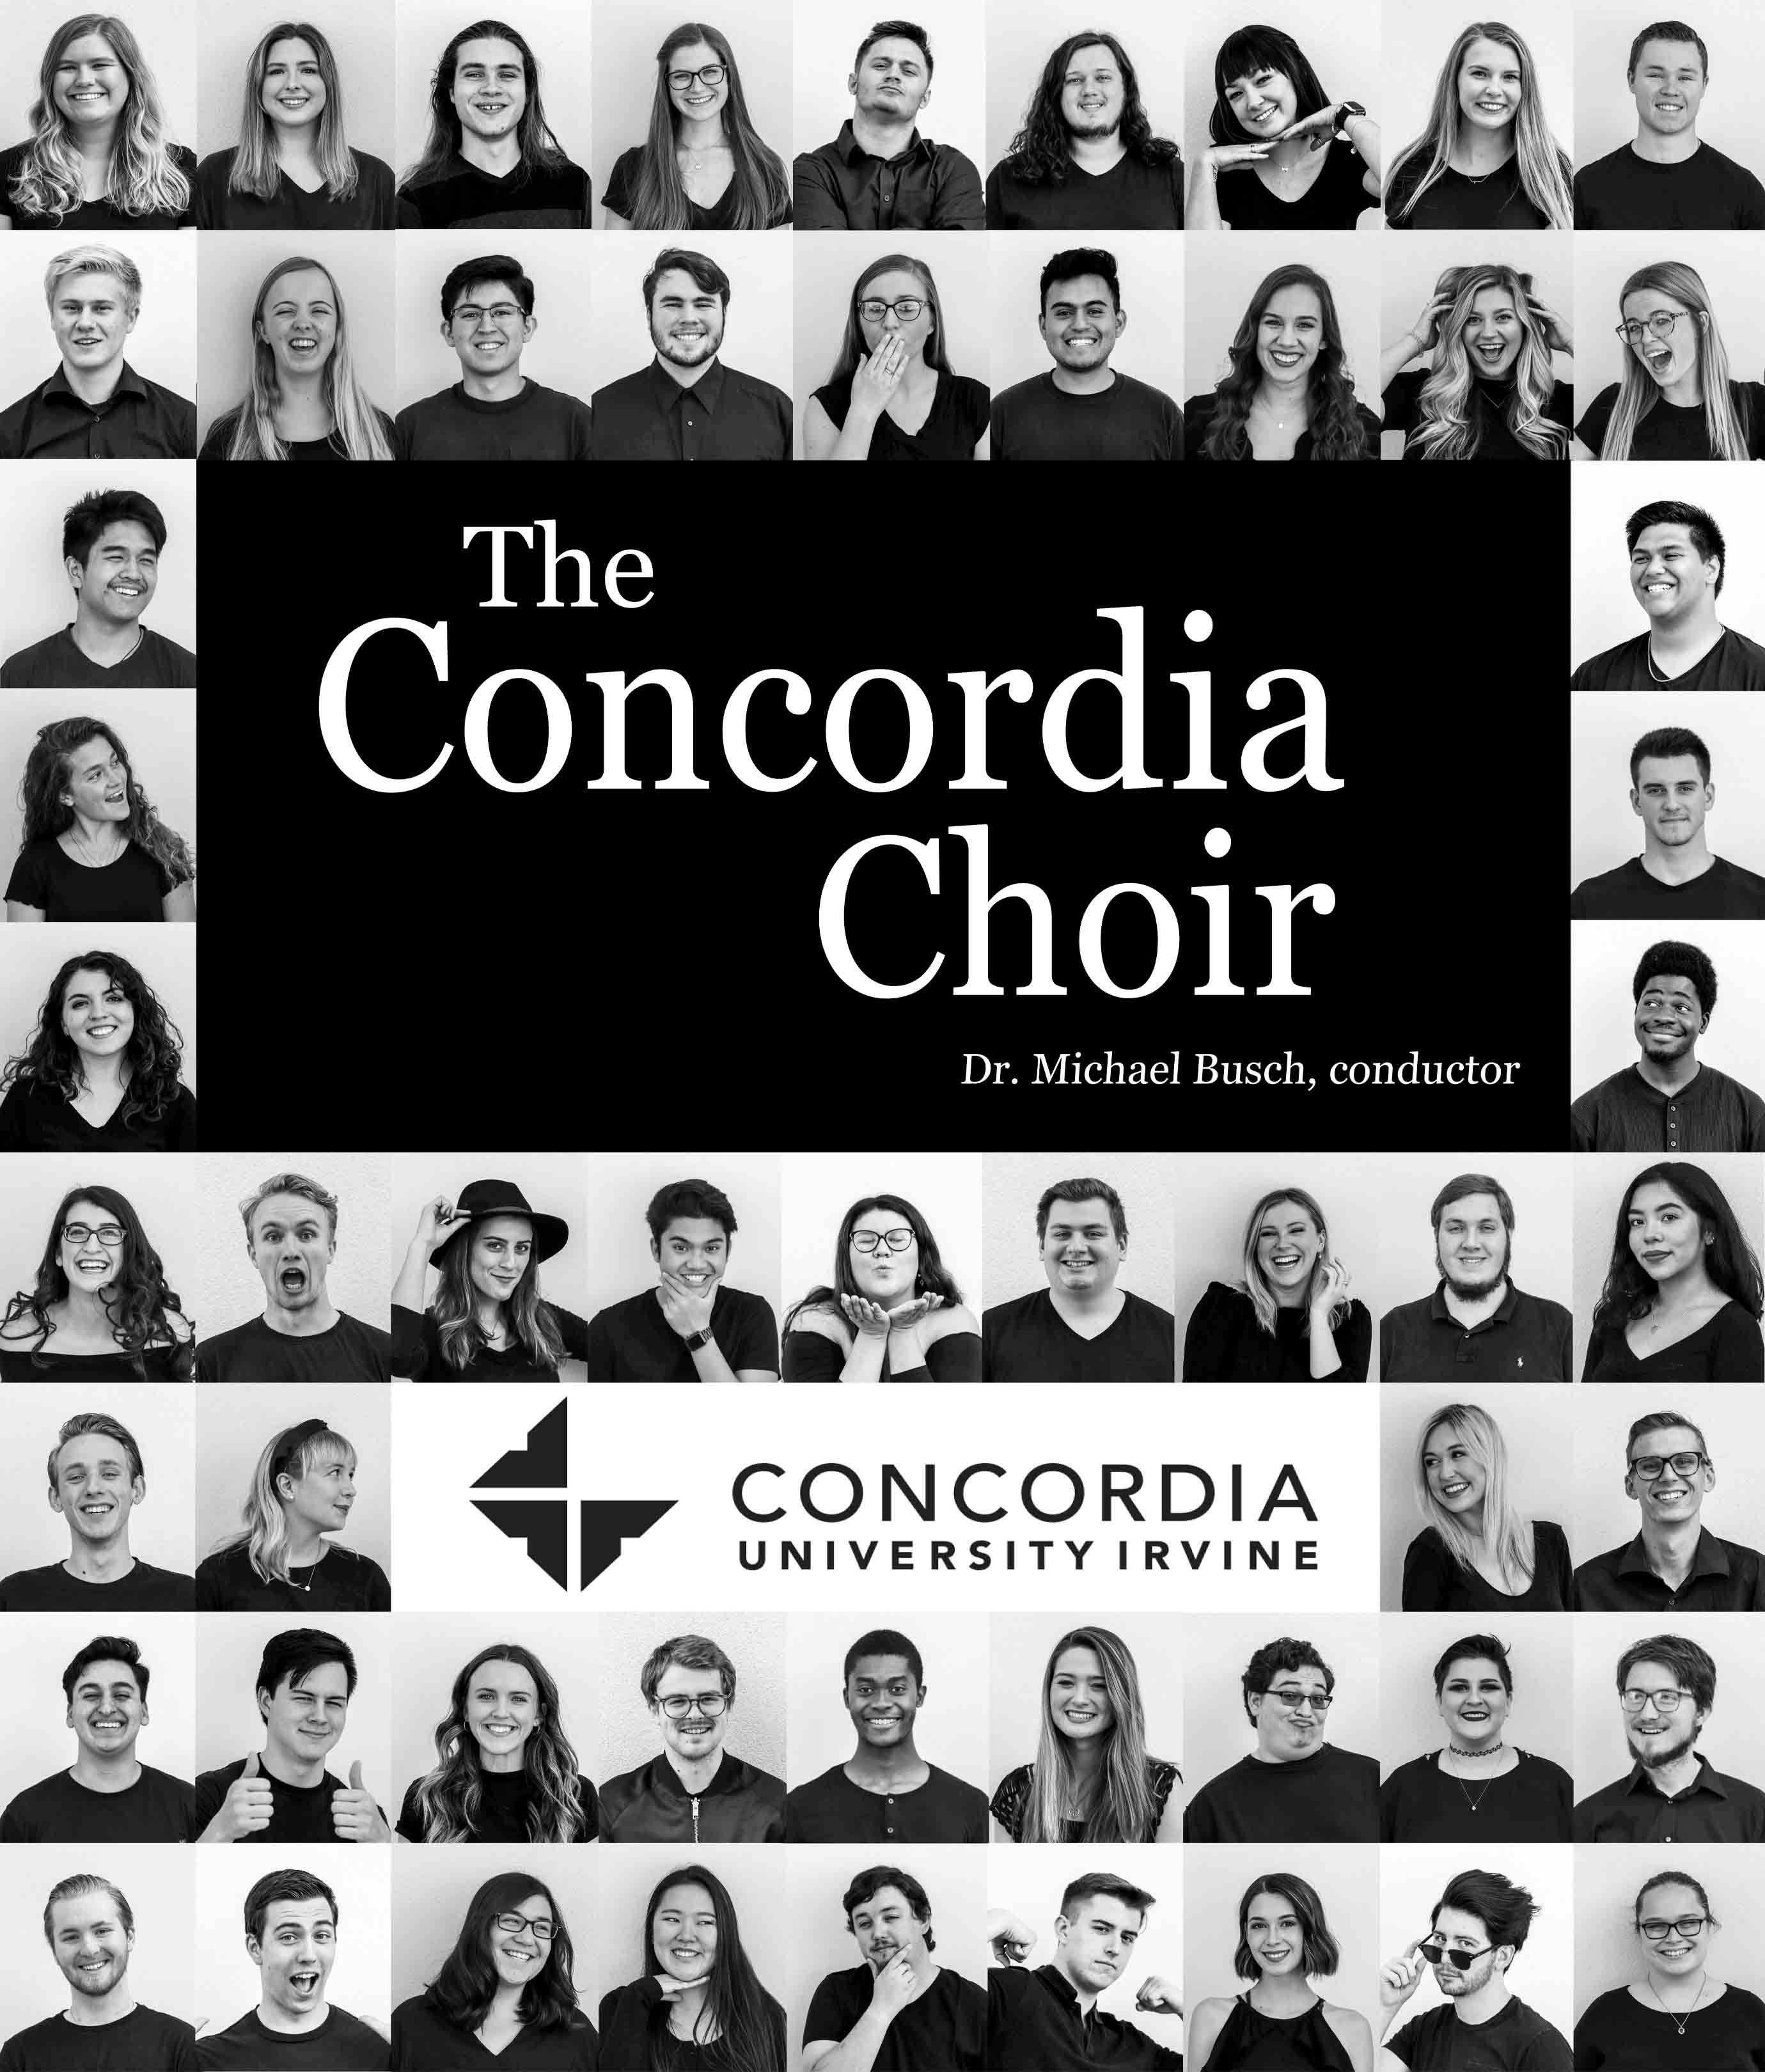 The Concordia choir